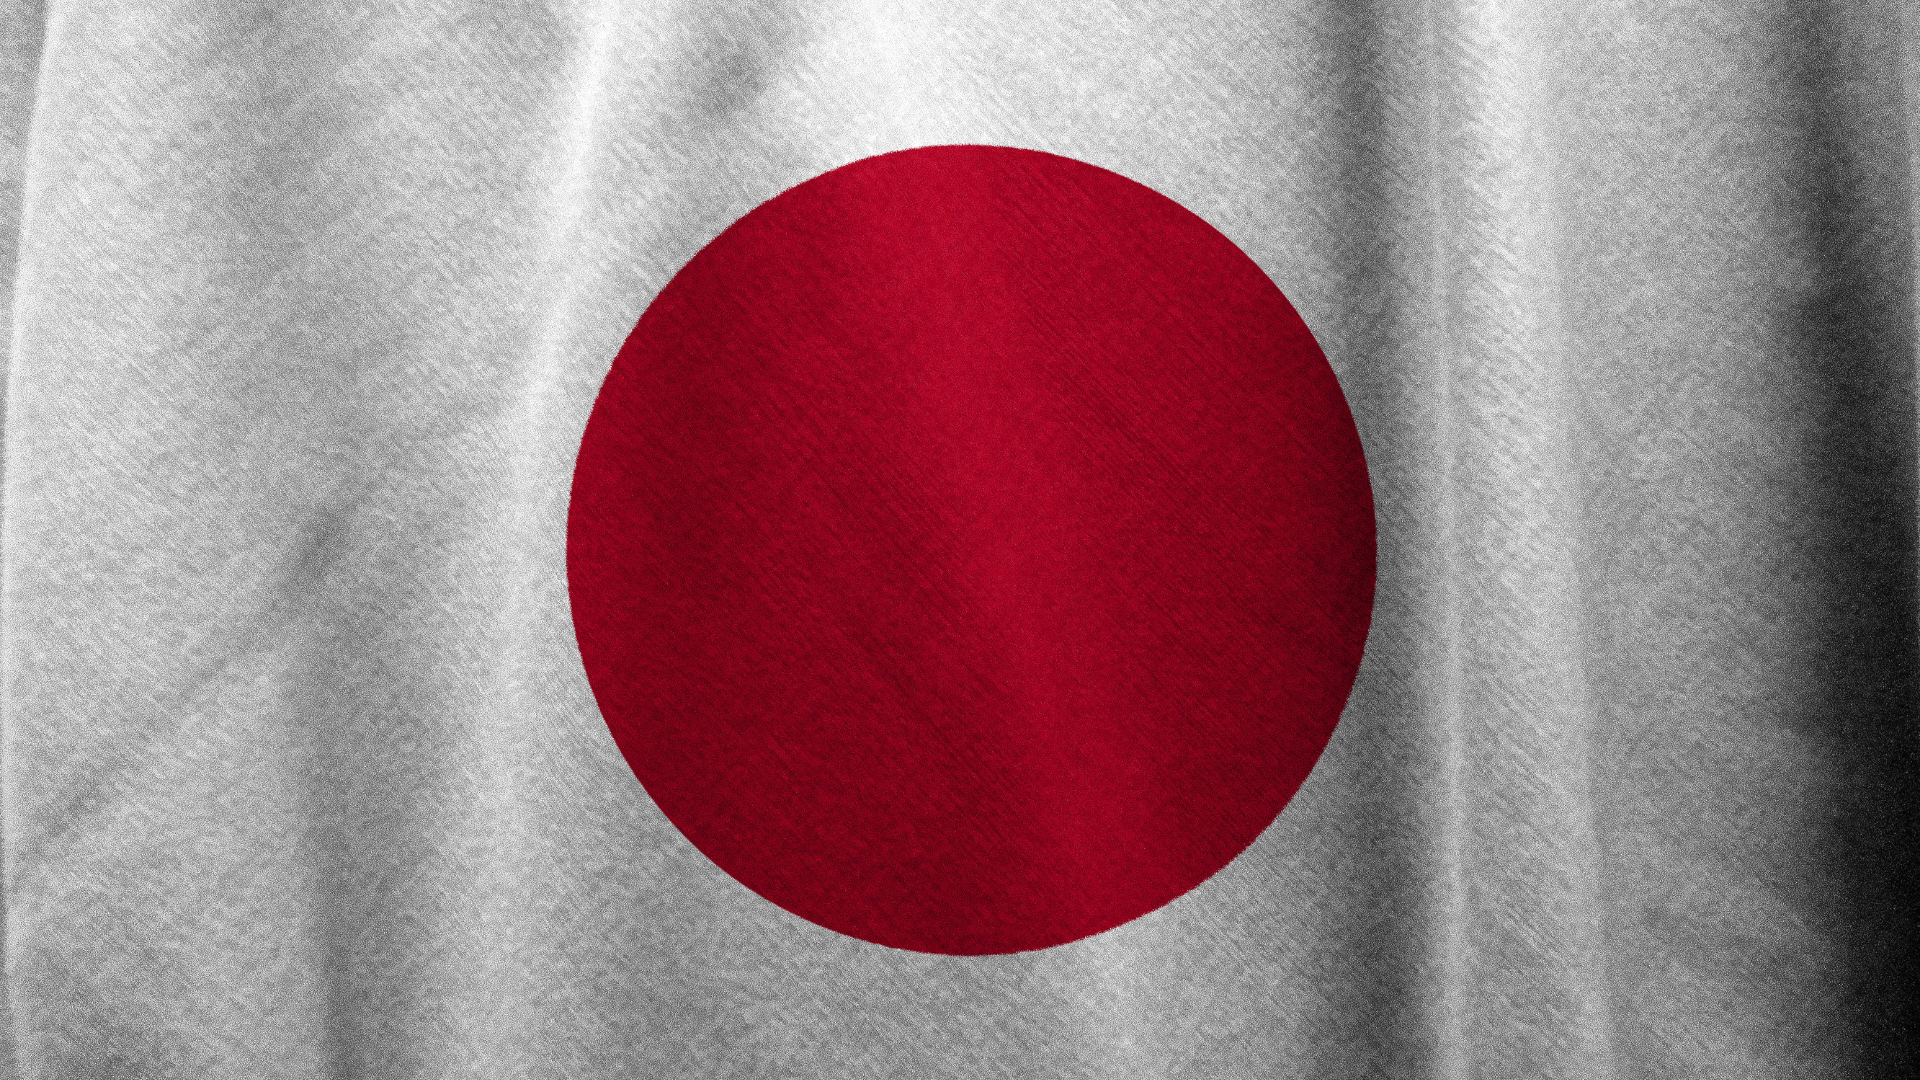 A Japanese flag